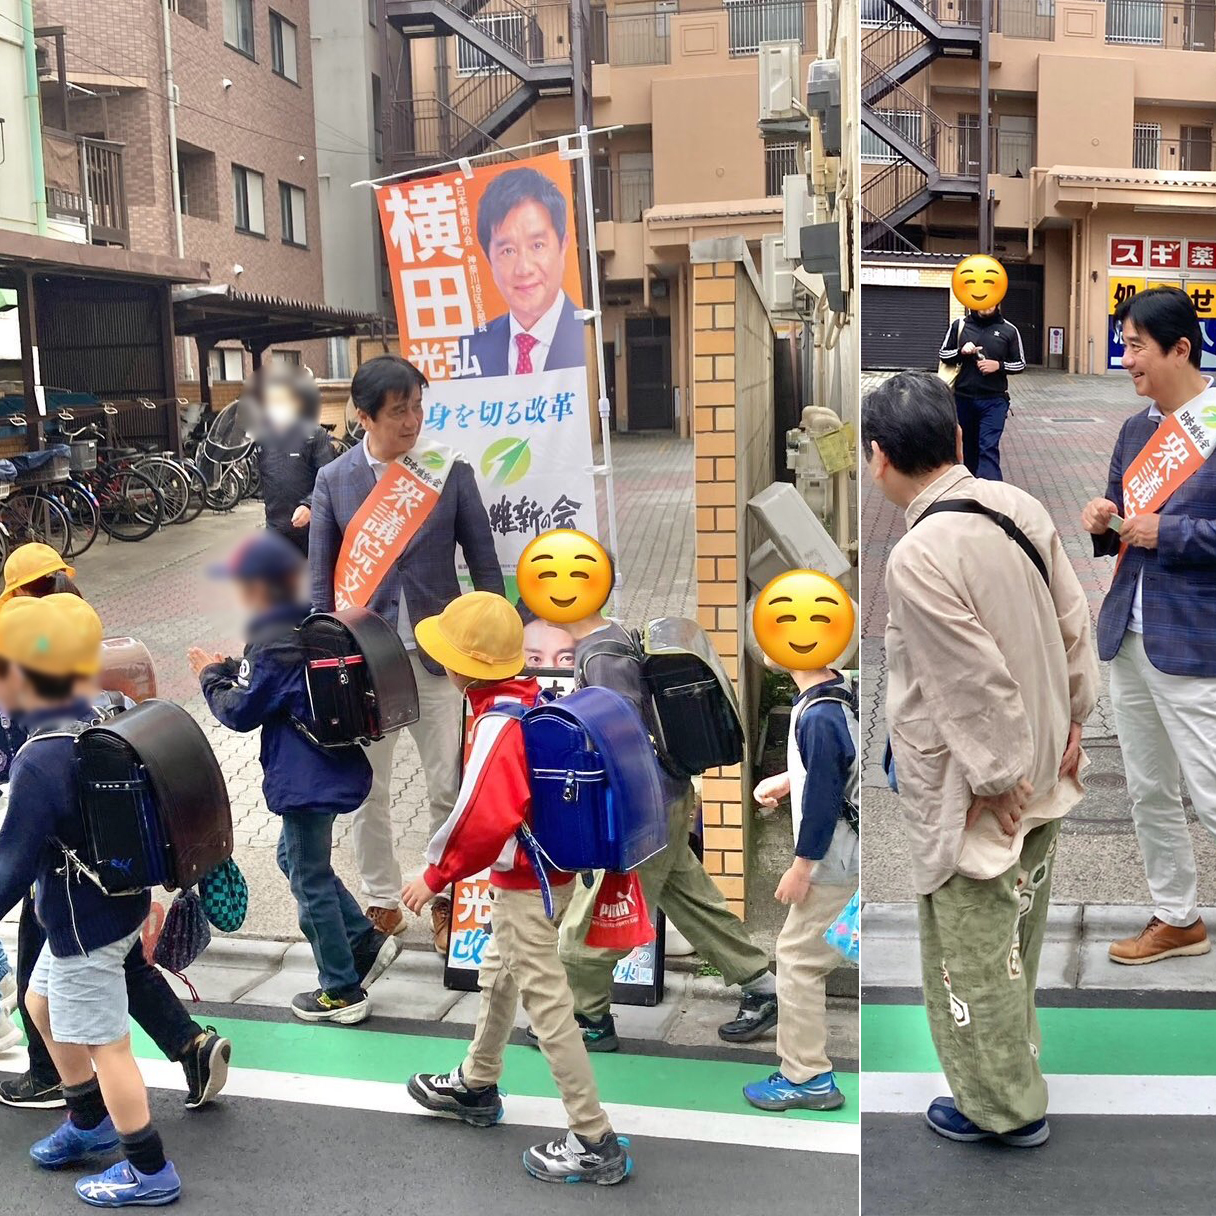 向河原駅にて、日本維新の会、神奈川18区（中原区・高津区）の横田光弘がご挨拶。子供達の安全が優先です。